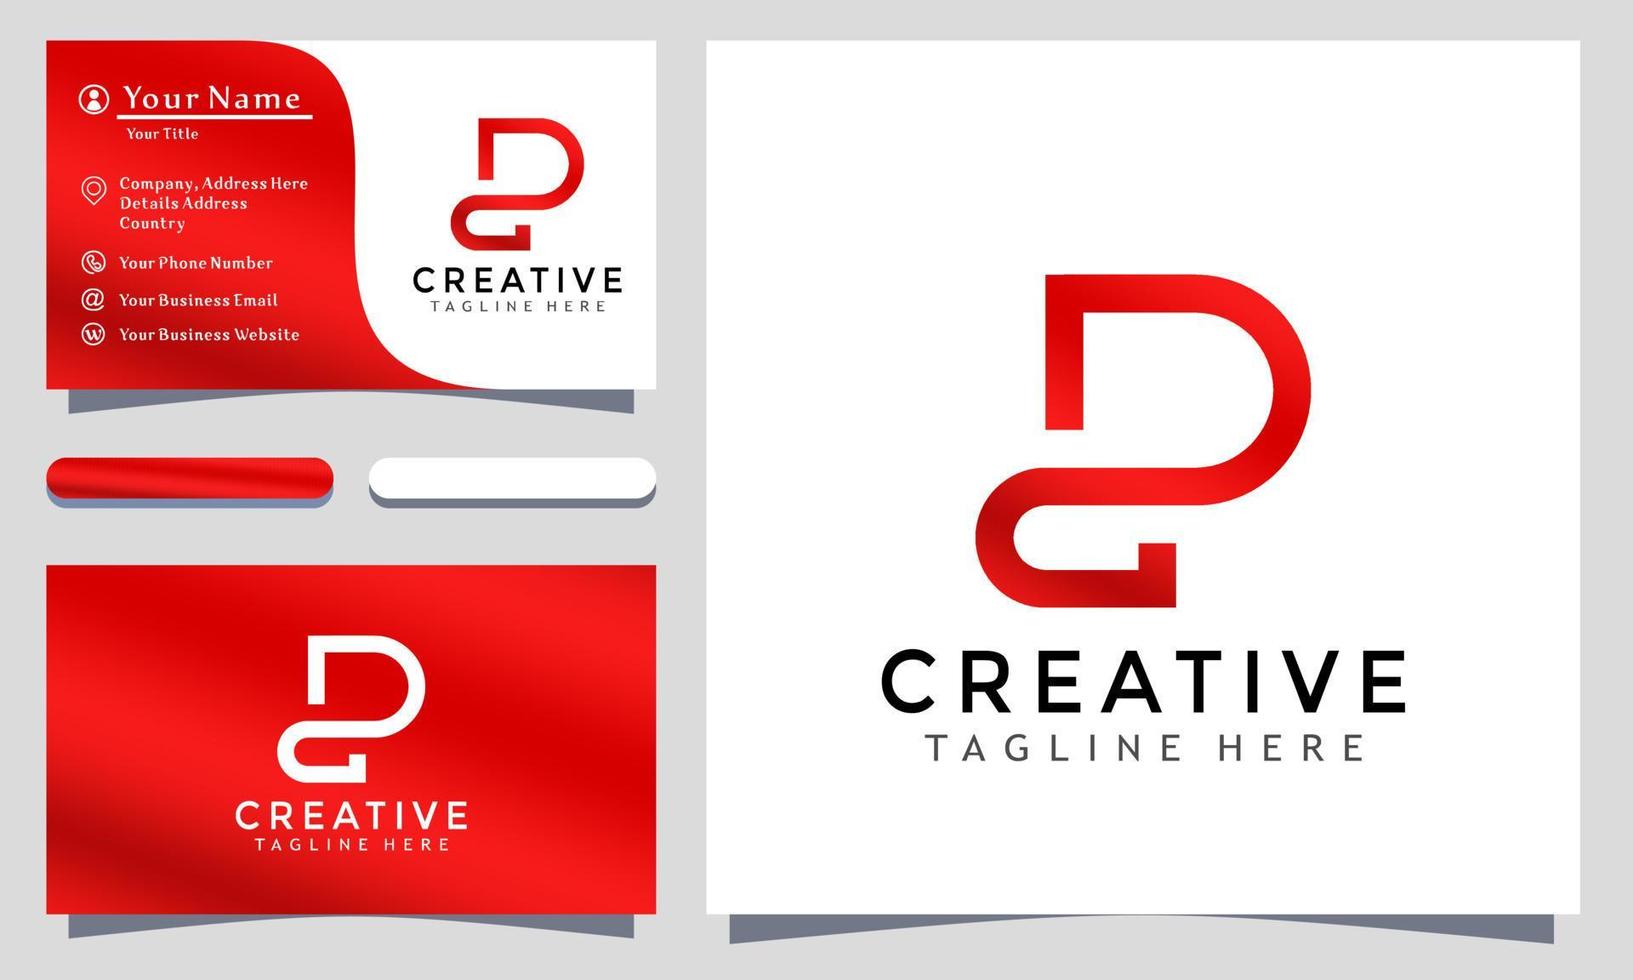 Anfangsbuchstabe pd kreative Logo-Design-Vektor-Illustration, minimalistisch elegante, moderne Firmen-Visitenkartenvorlage vektor